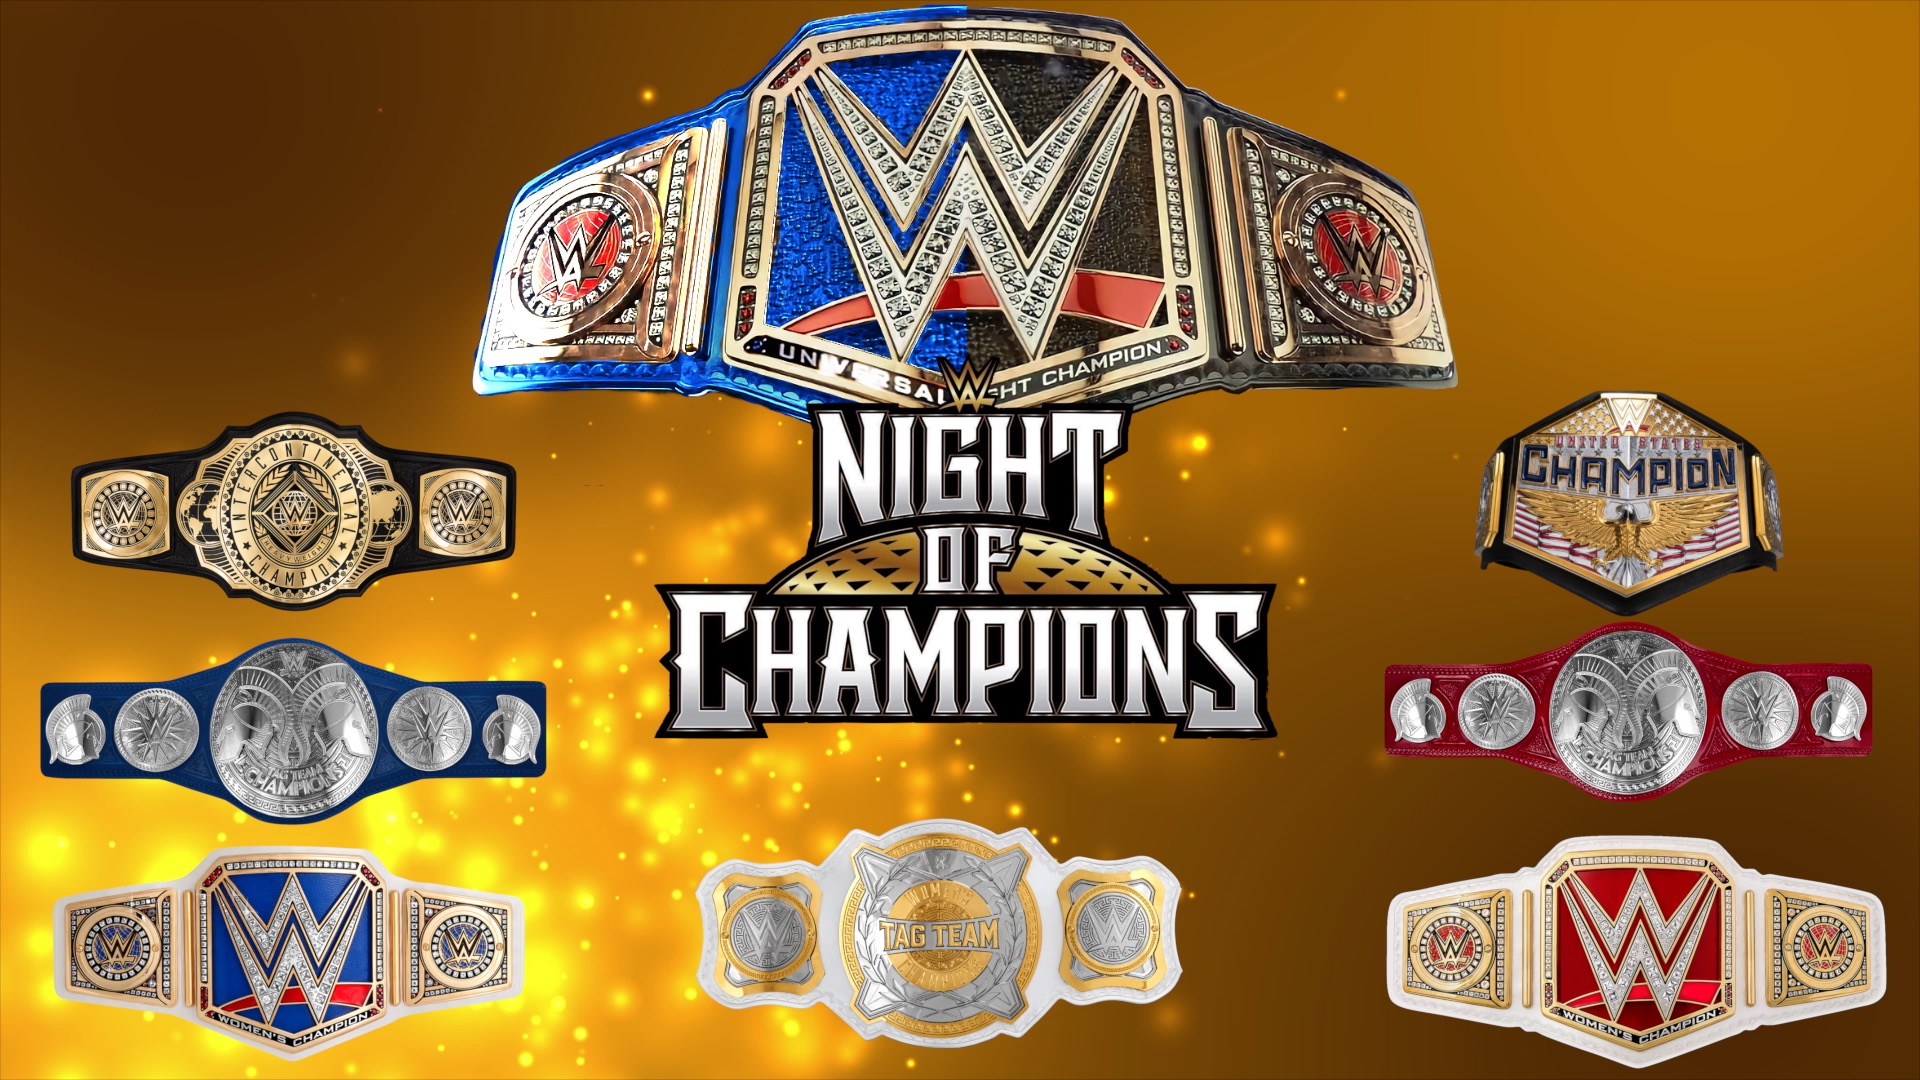 WWE Mengubah Nama Acara dan Memperkenalkan Nama Baru untuk Pay-Per-View yang Akan Datang;  Lihat WWE Night of Champions Tanggal, Waktu, Lokasi, Prediksi, dan Lainnya